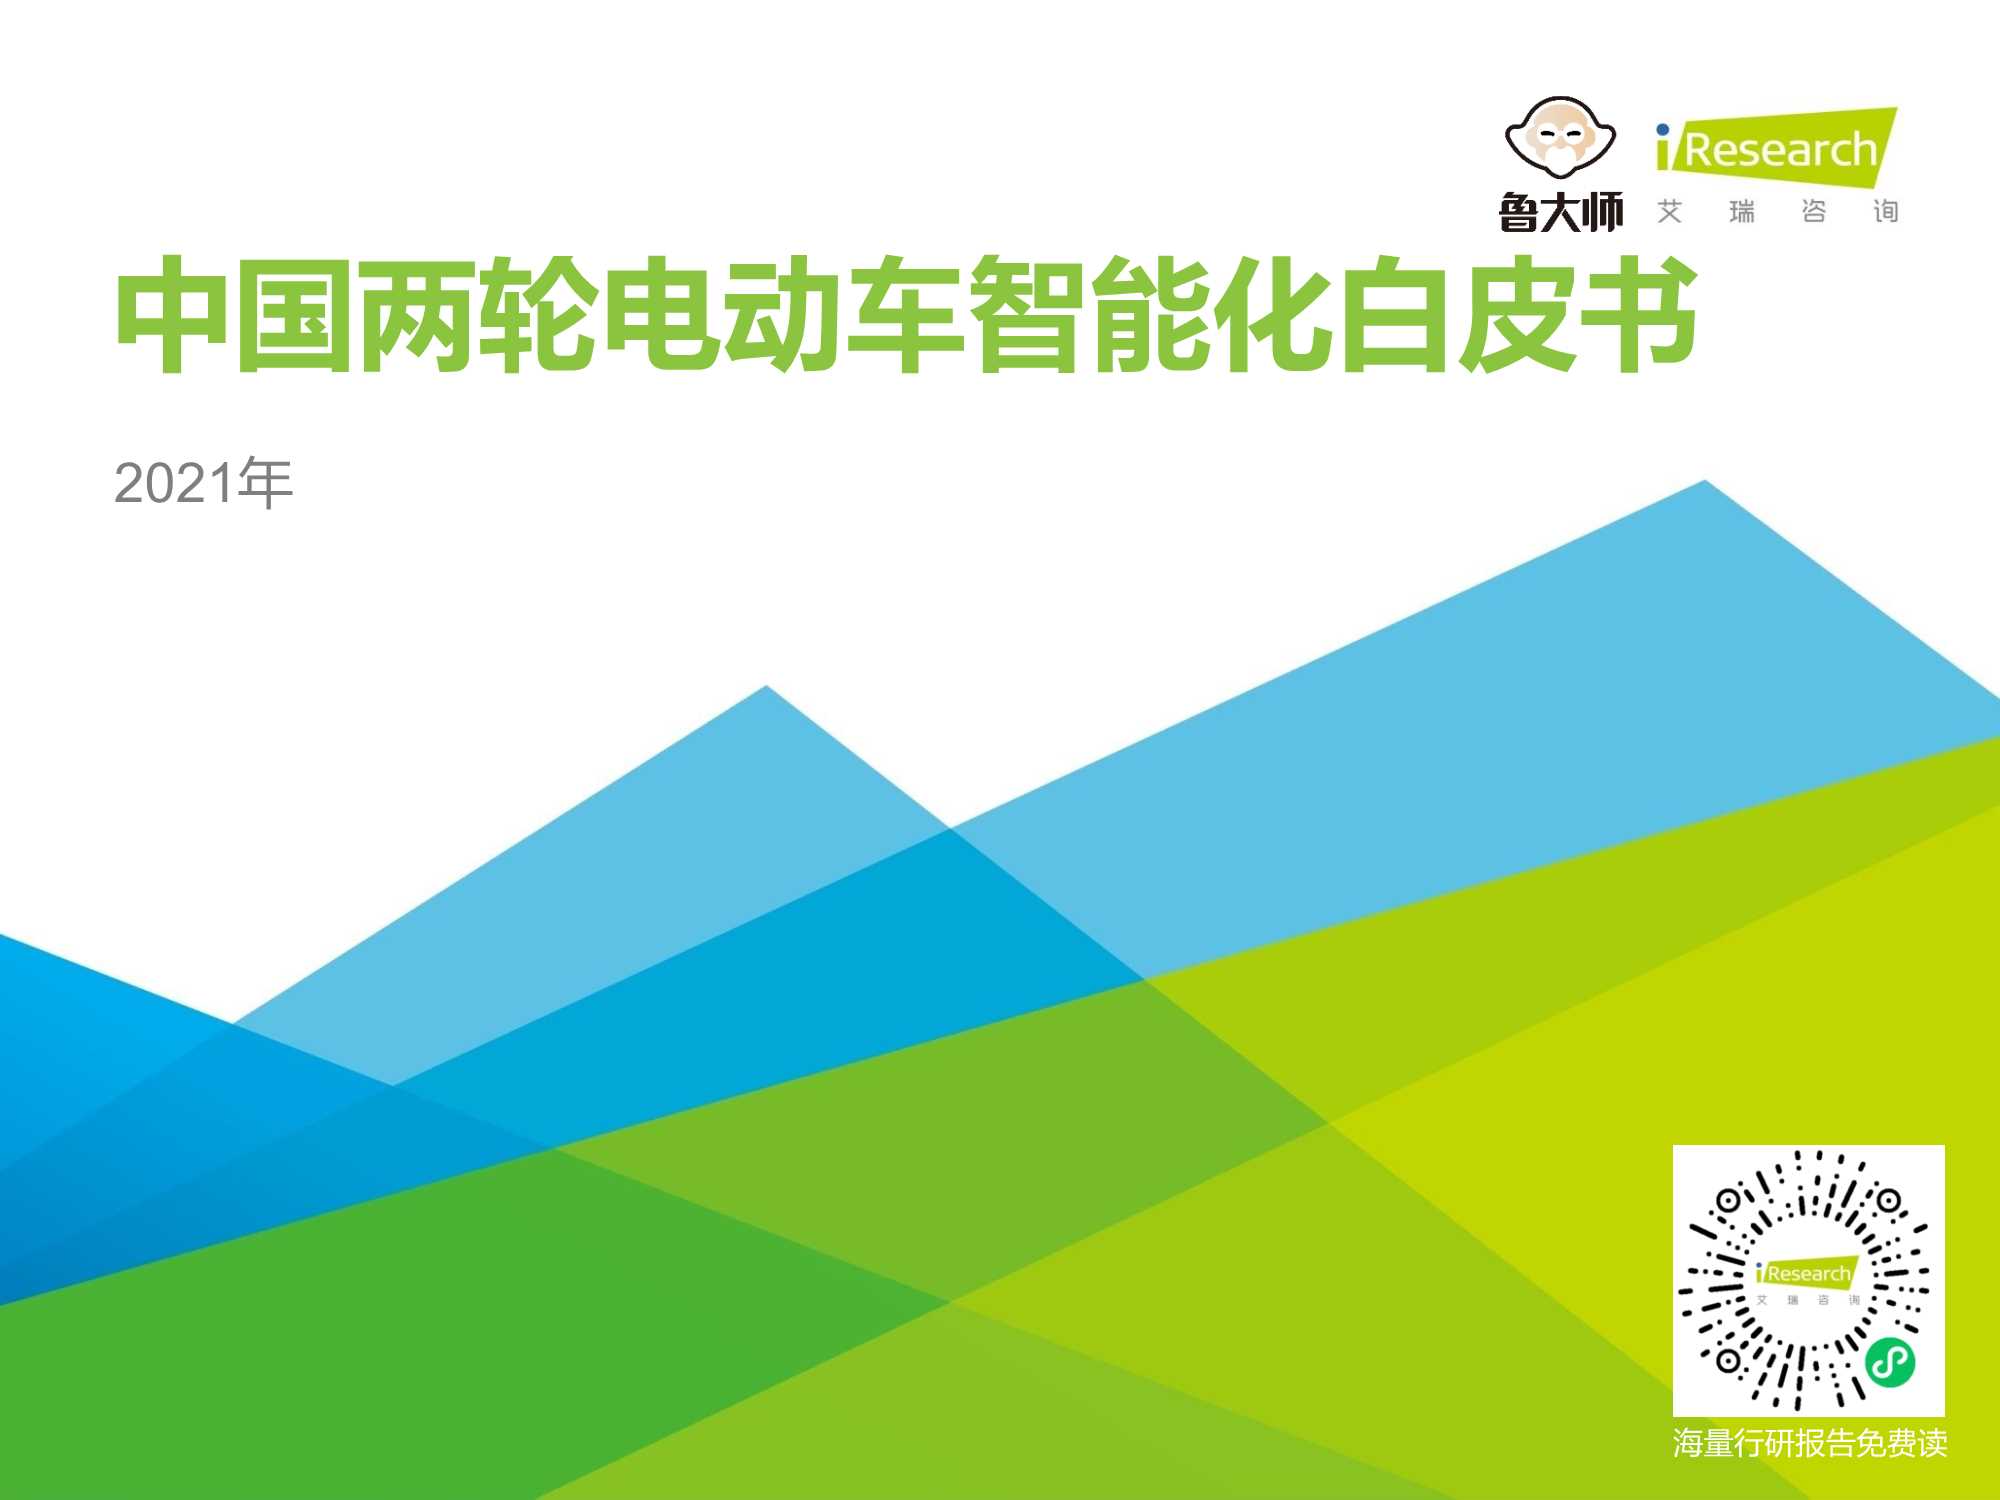 艾瑞咨询-2021年中国两轮电动车智能化白皮书-2021.06-54页